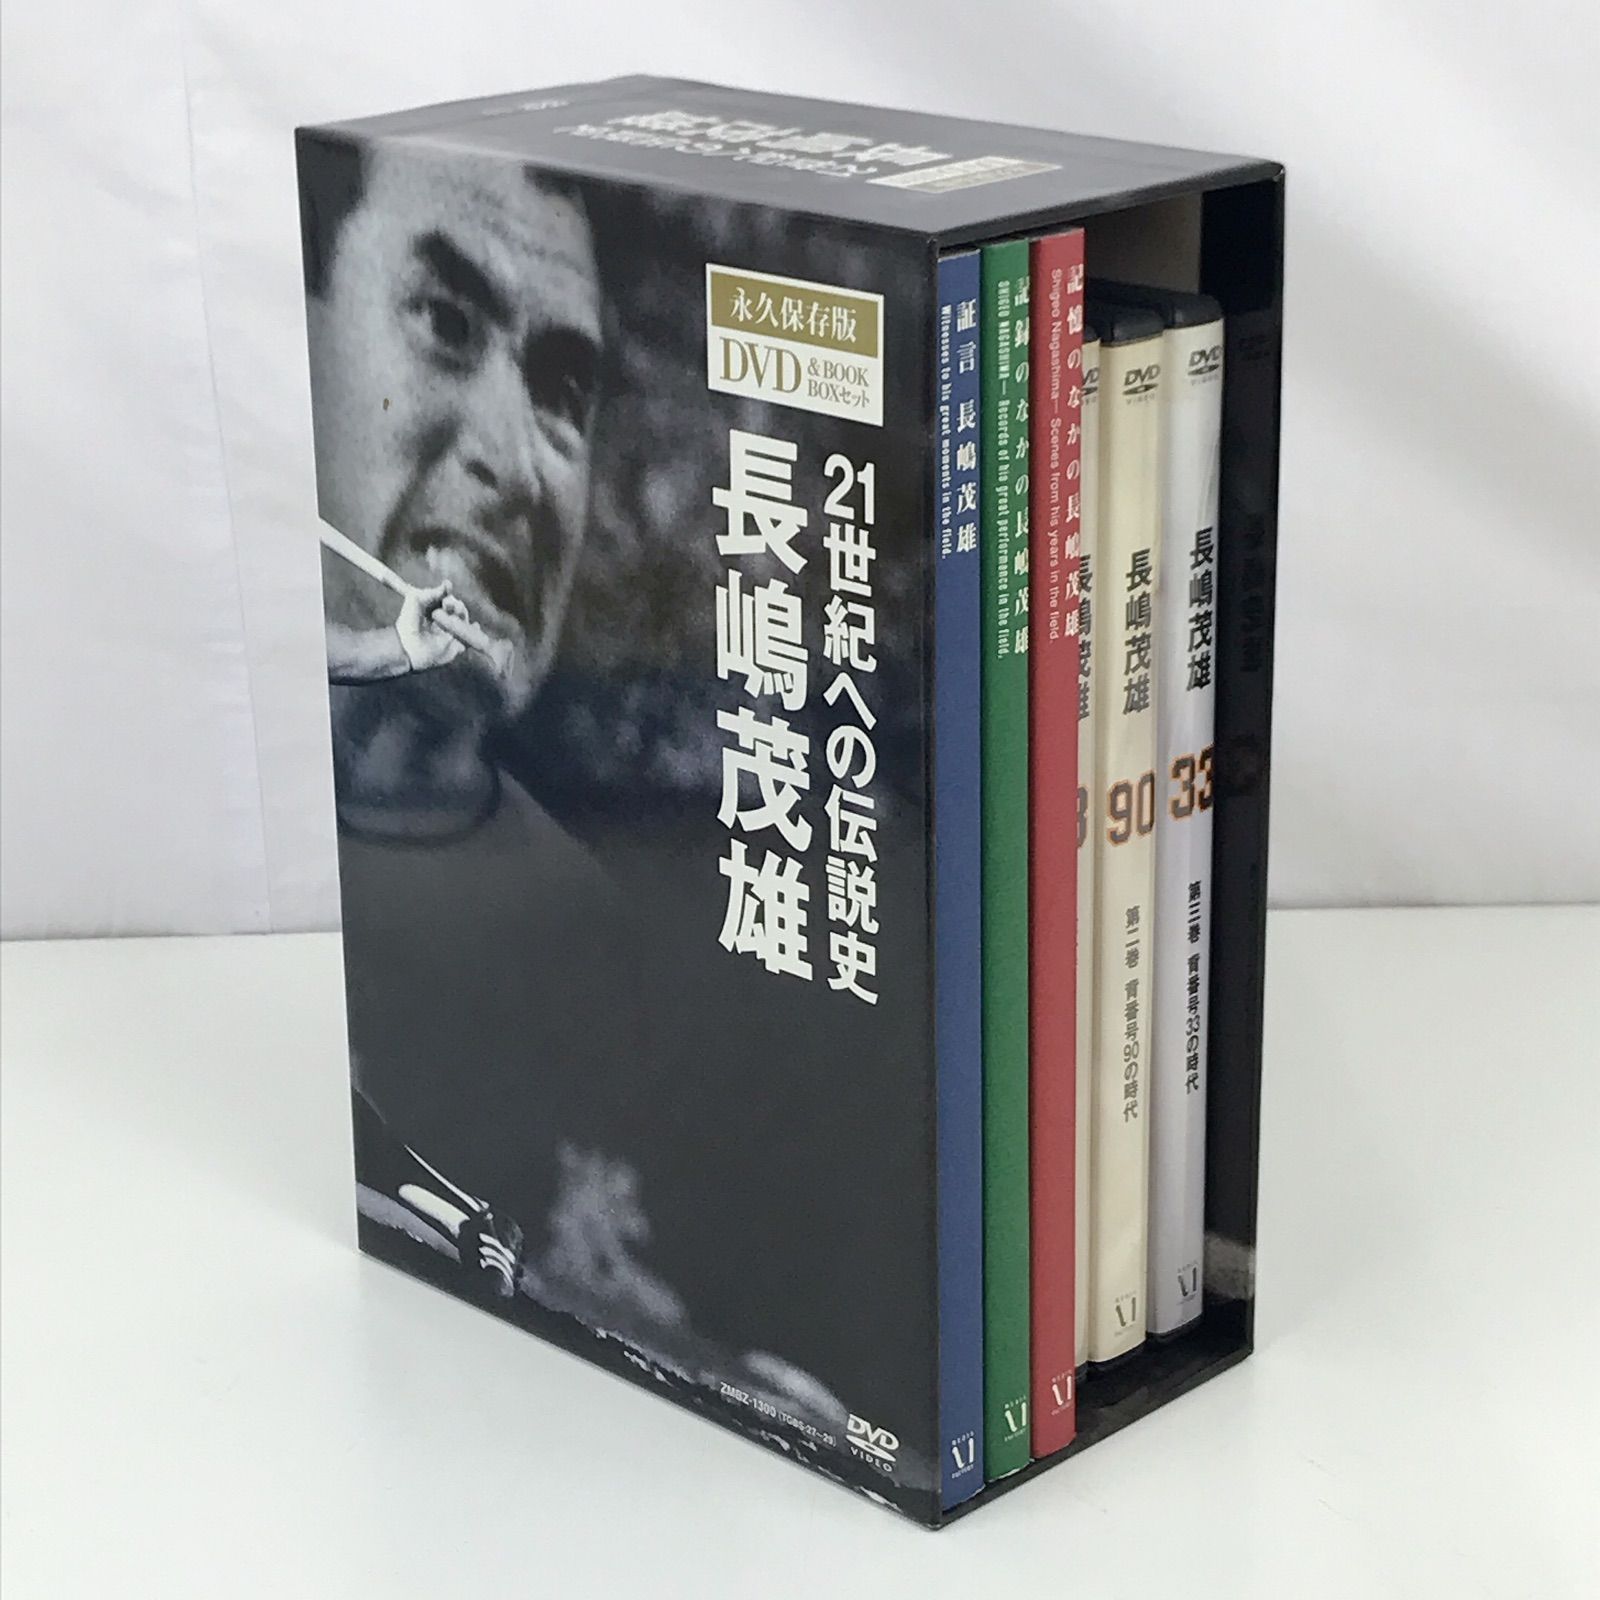 21世紀への伝説史 長嶋茂雄 DVD - 洋画